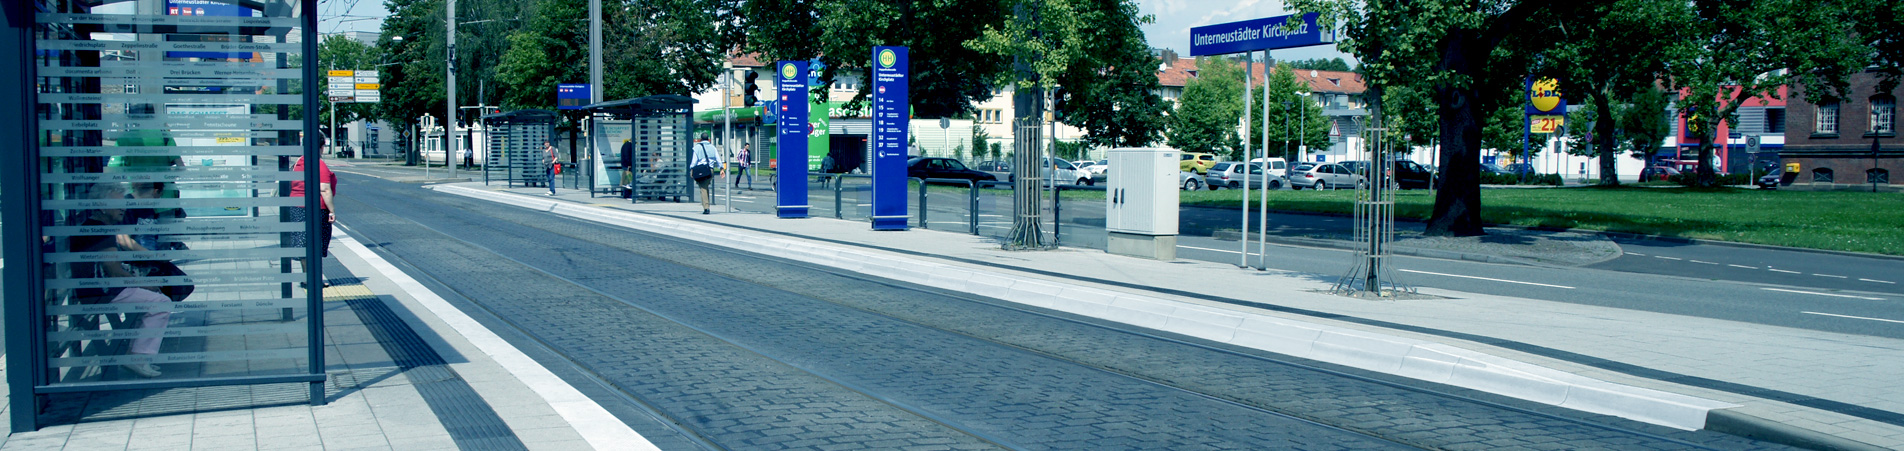 Straßen- und Busbahnhaltestelle in Kassel